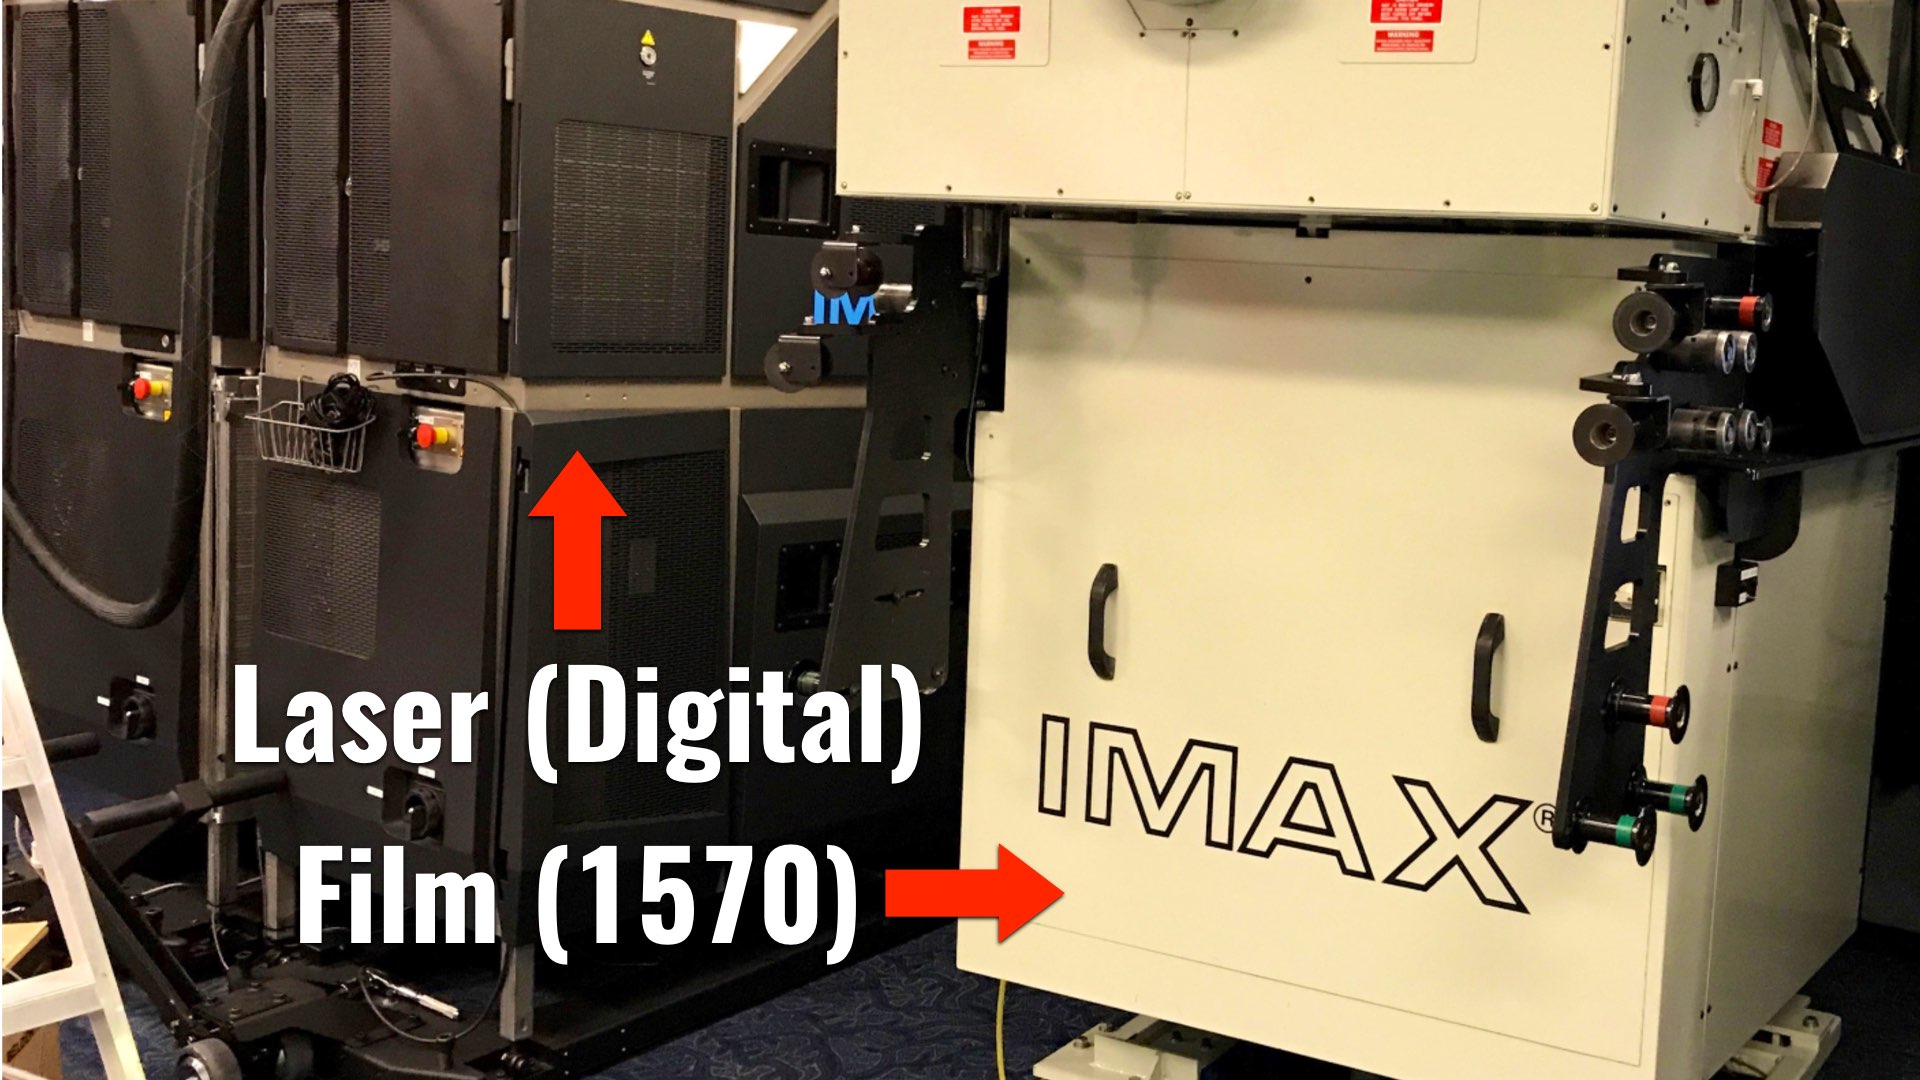 IMAX 1570 (Film) vs. IMAX Laser (Digital)